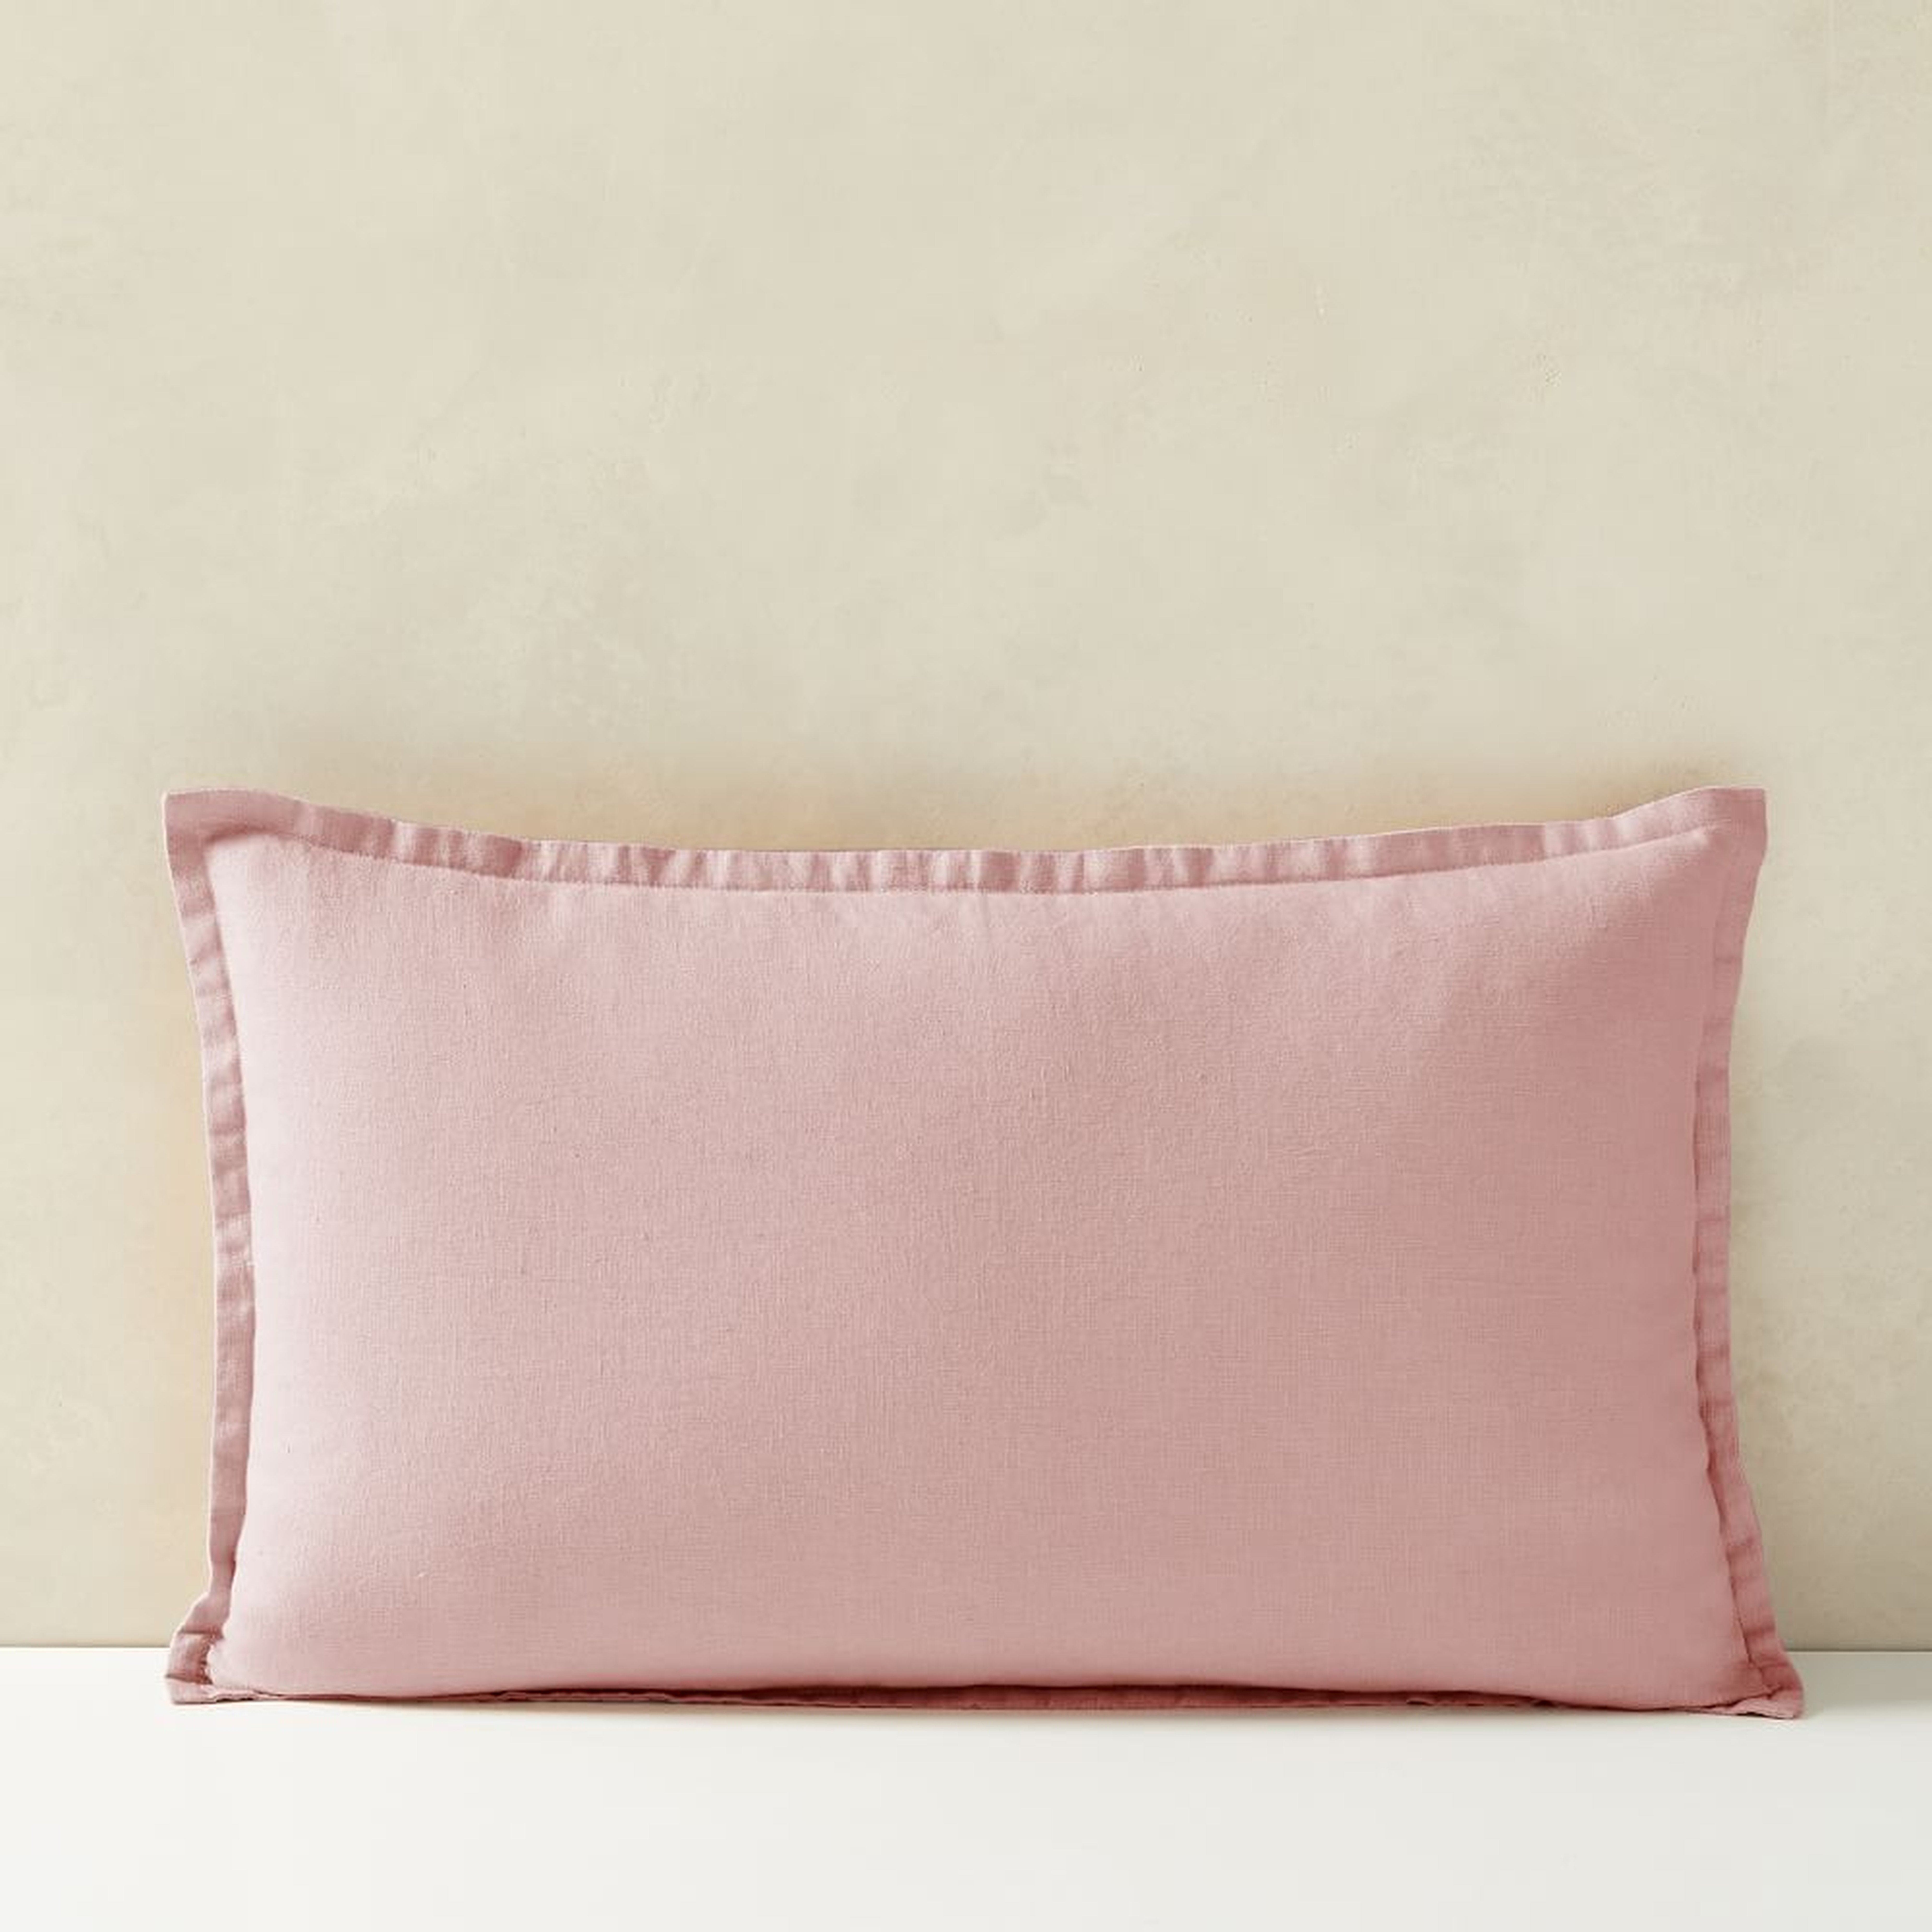 European Flax Linen Pillow Cover, 12"x21", Adobe Rose - West Elm